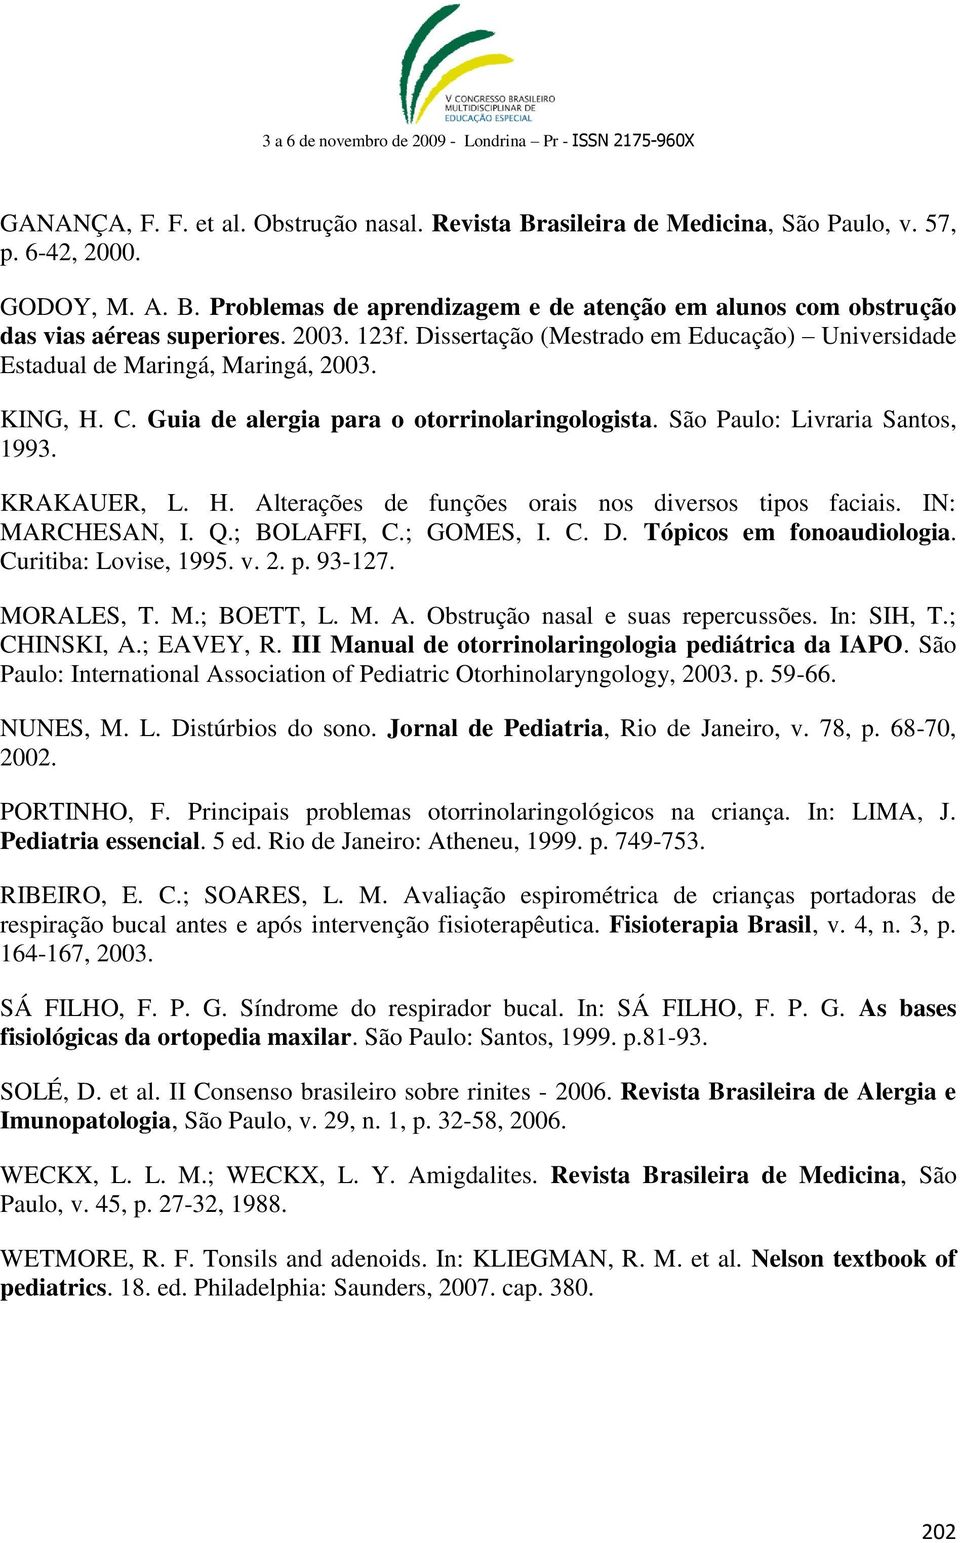 KRAKAUER, L. H. Alterações de funções orais nos diversos tipos faciais. IN: MARCHESAN, I. Q.; BOLAFFI, C.; GOMES, I. C. D. Tópicos em fonoaudiologia. Curitiba: Lovise, 1995. v. 2. p. 93-127.